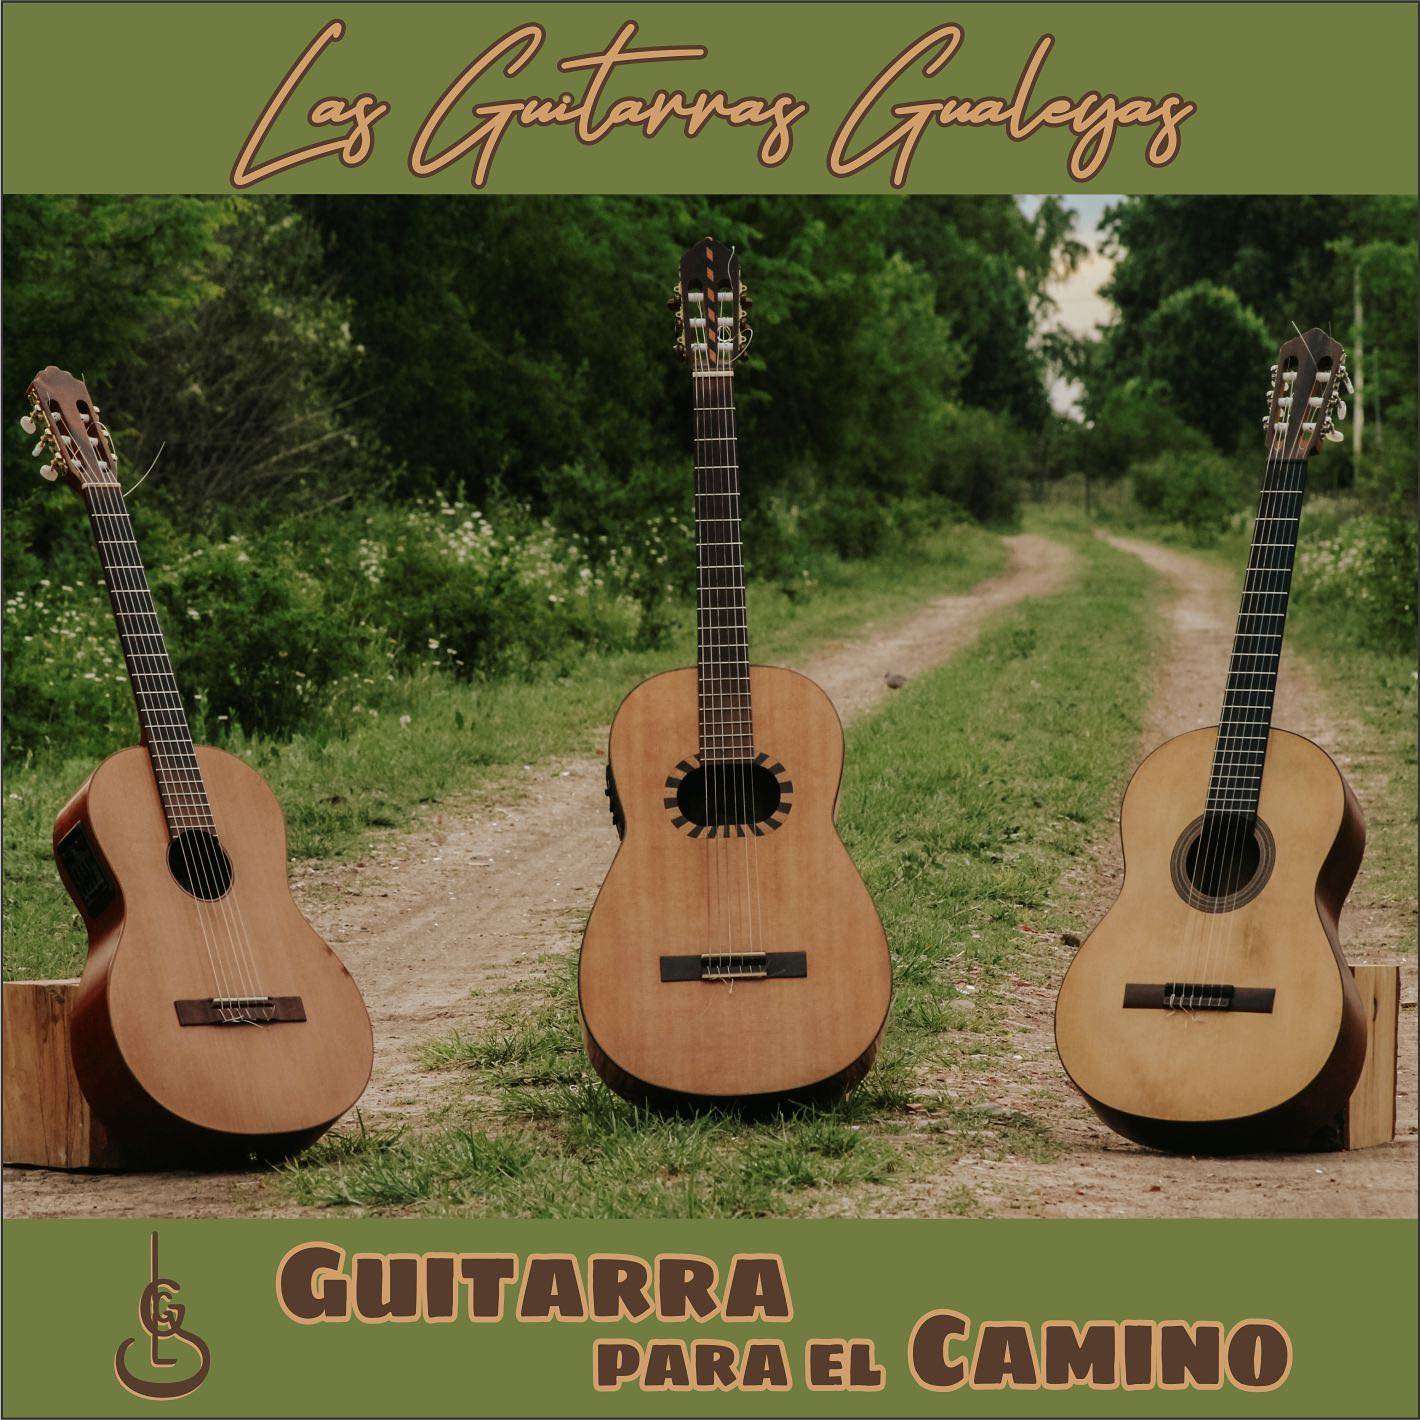 Las Guitarras Gualeyas estrenaron su segundo disco